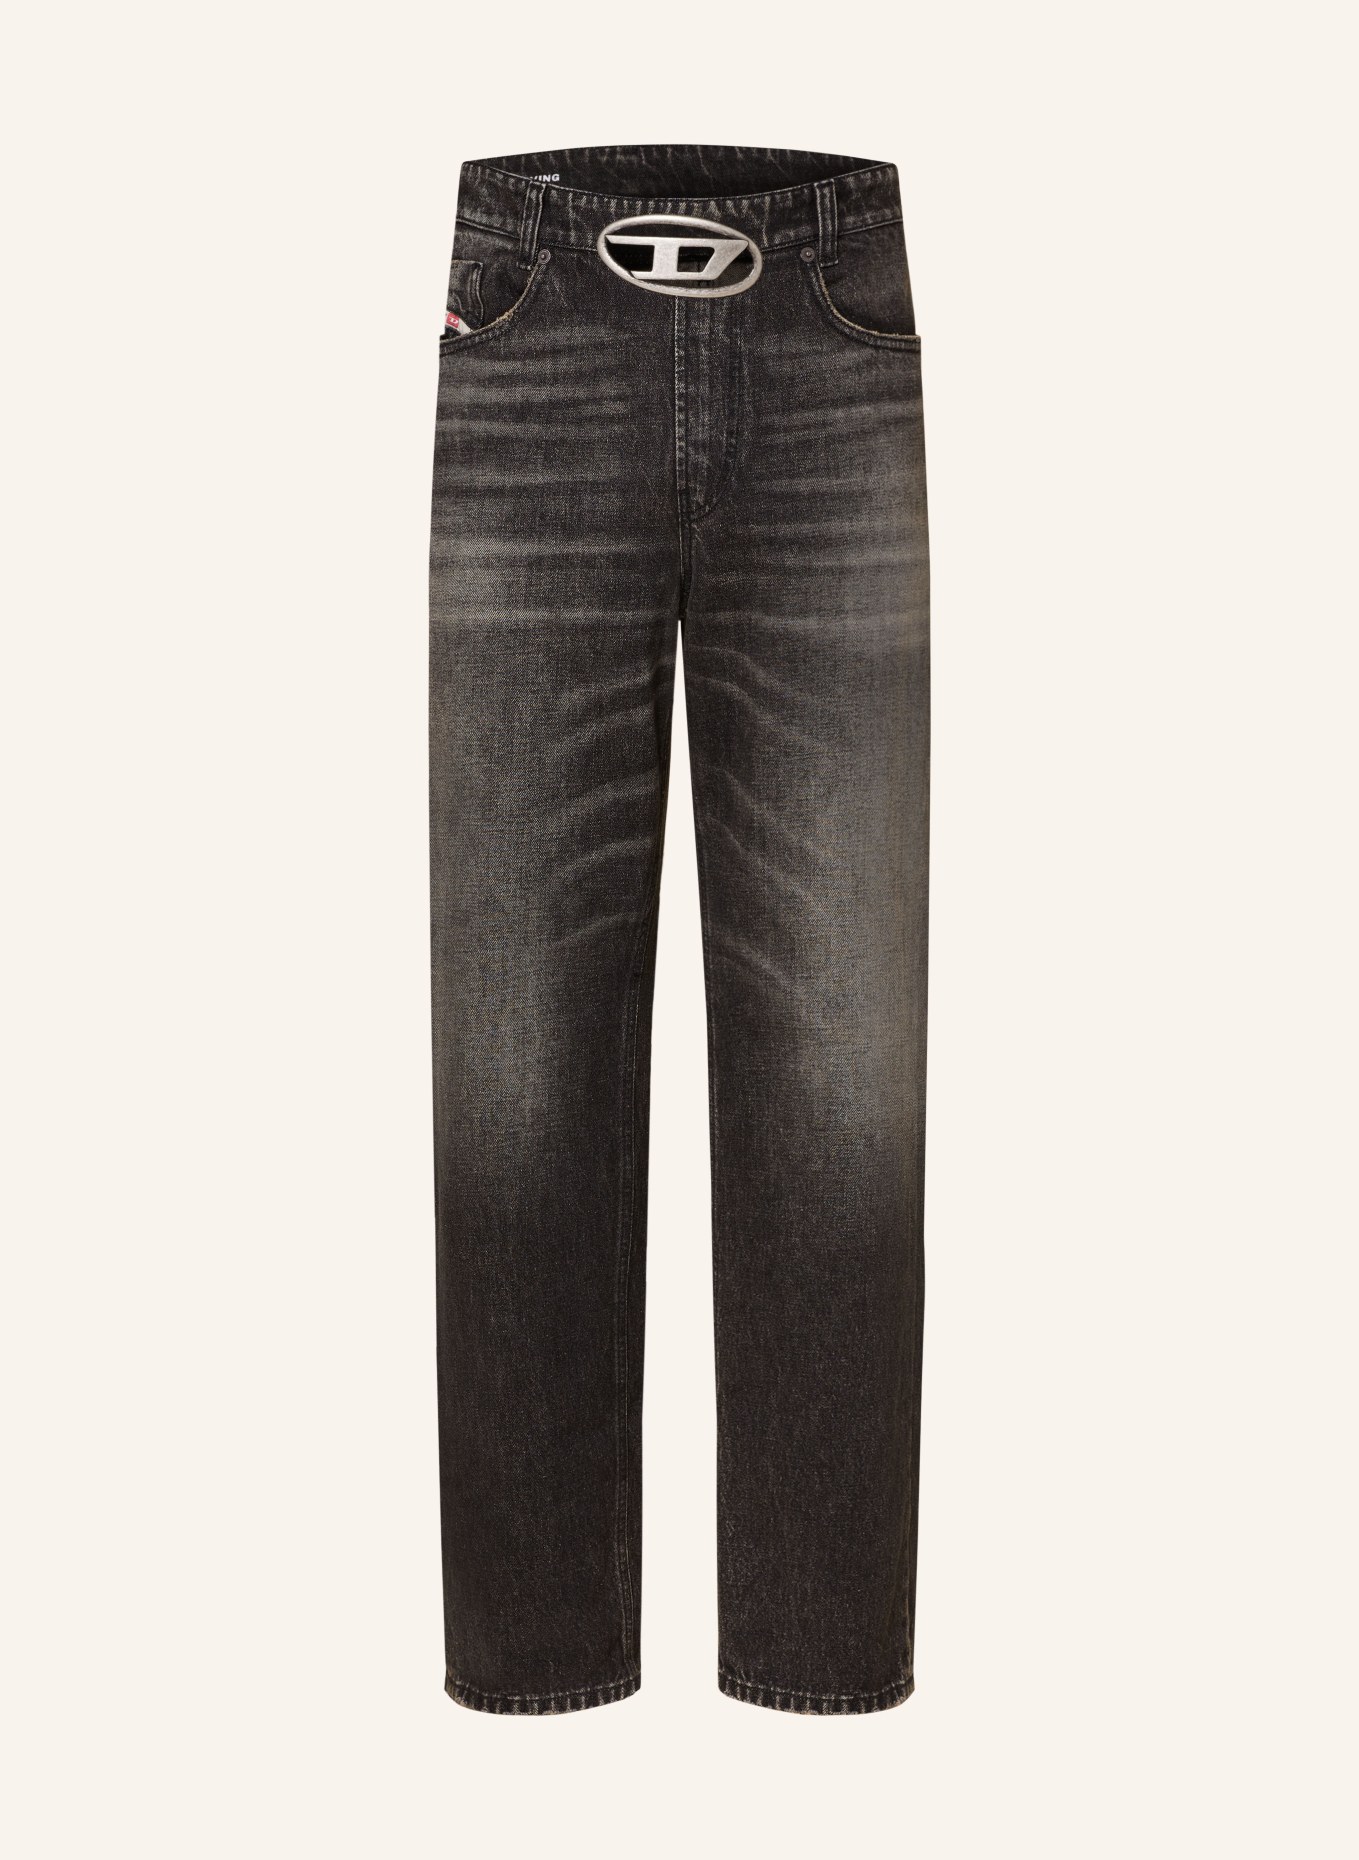 DIESEL Jeans 2010 D-MACS-S2 loose fit, Color: 02 (Image 1)